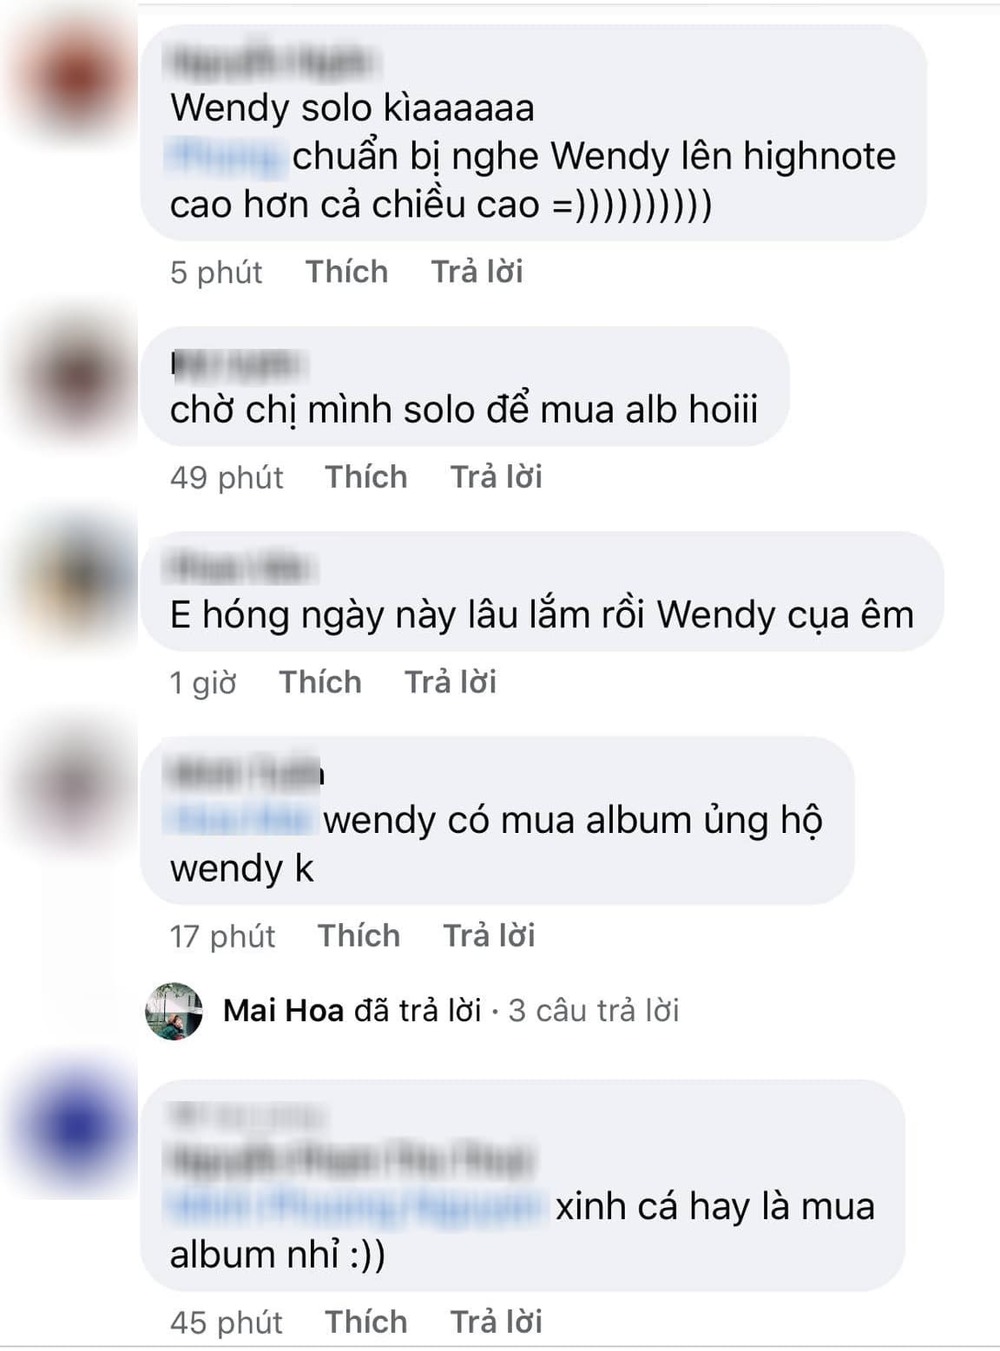  
Cư dân mạng Việt Nam vui mừng trước tin Wendy debut solo. (Ảnh: Chụp màn hình)